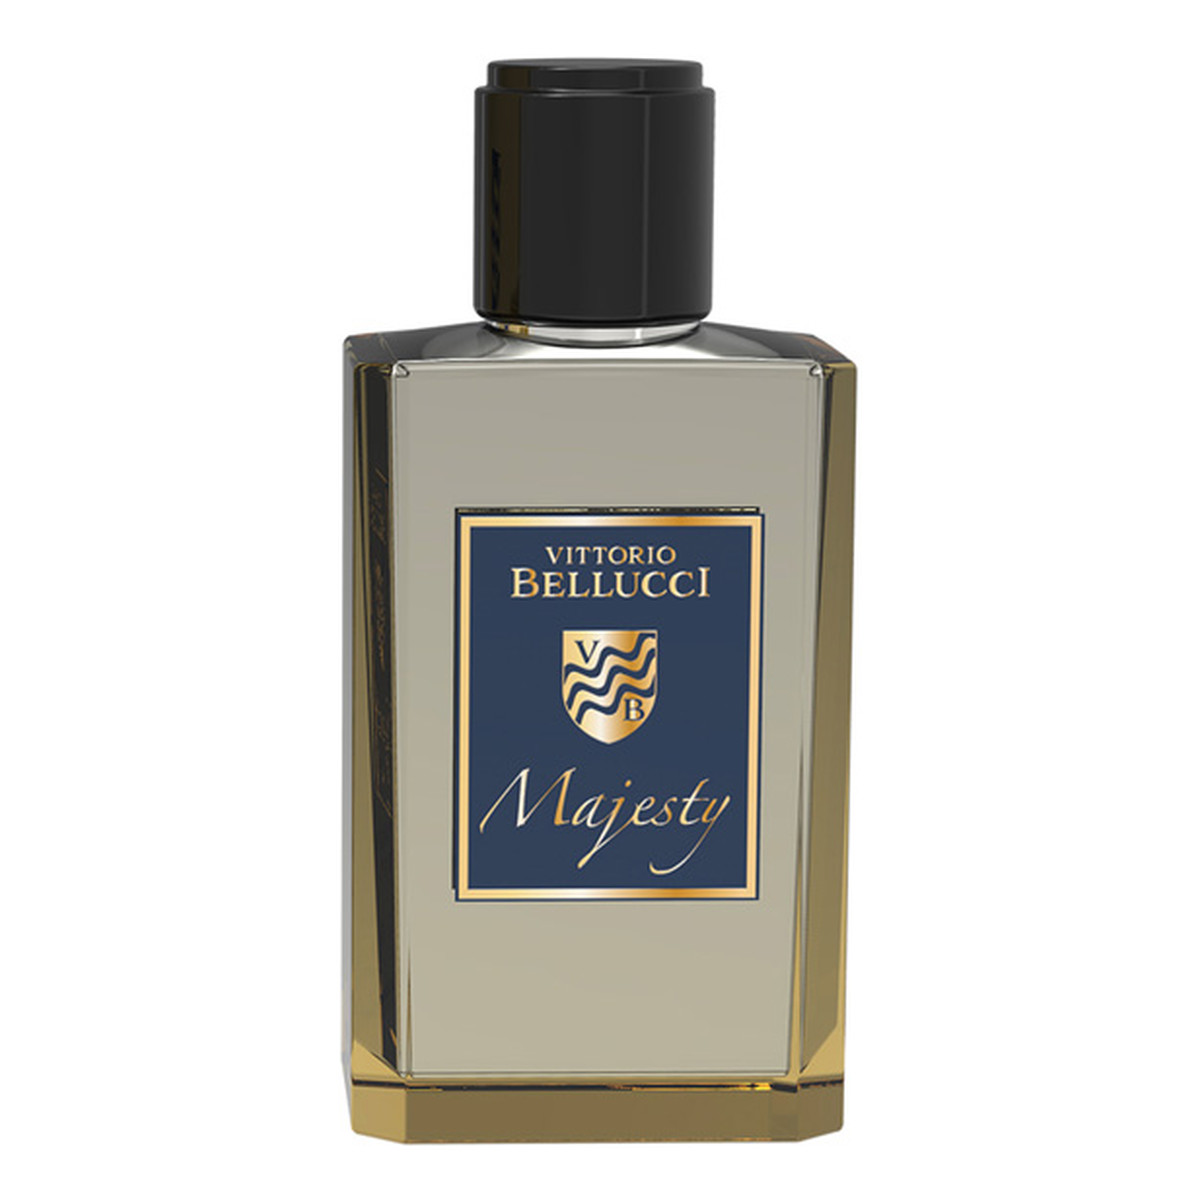 Vittorio Bellucci Majesty Woda perfumowana spray 100ml